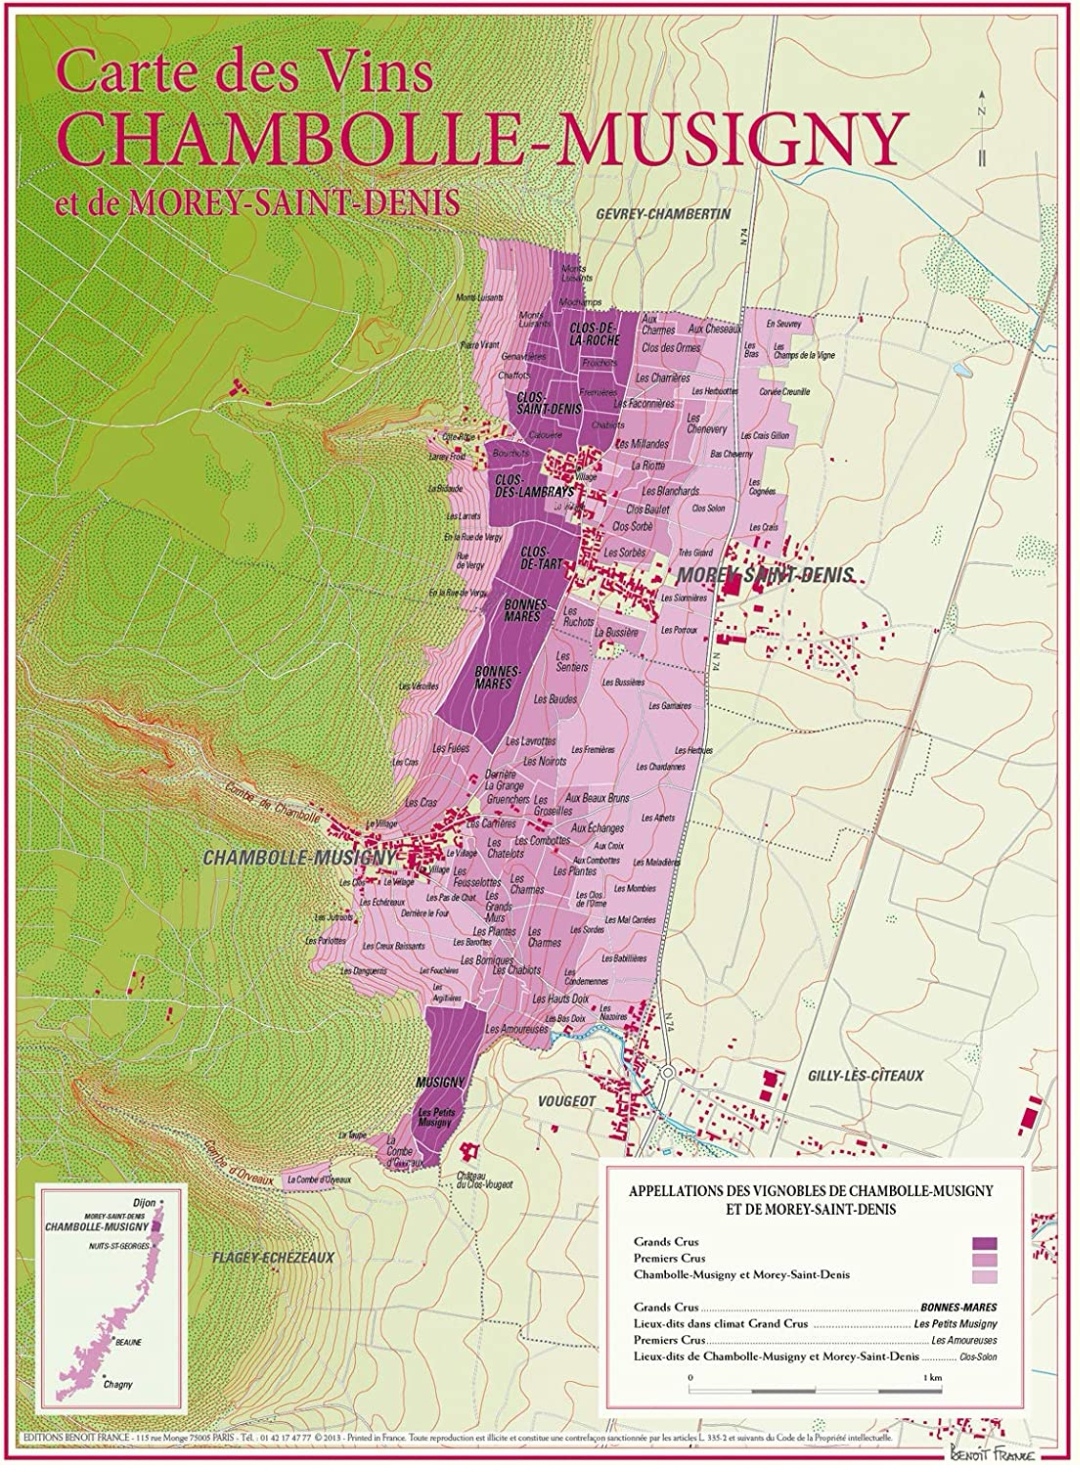 Enonauta/Degustazione di Vino #266 - review - Chambolle-Musigny "Les Charmes" Premier Cru 1991 - Domaine Amiot-Servelle | elogio alla pazienza